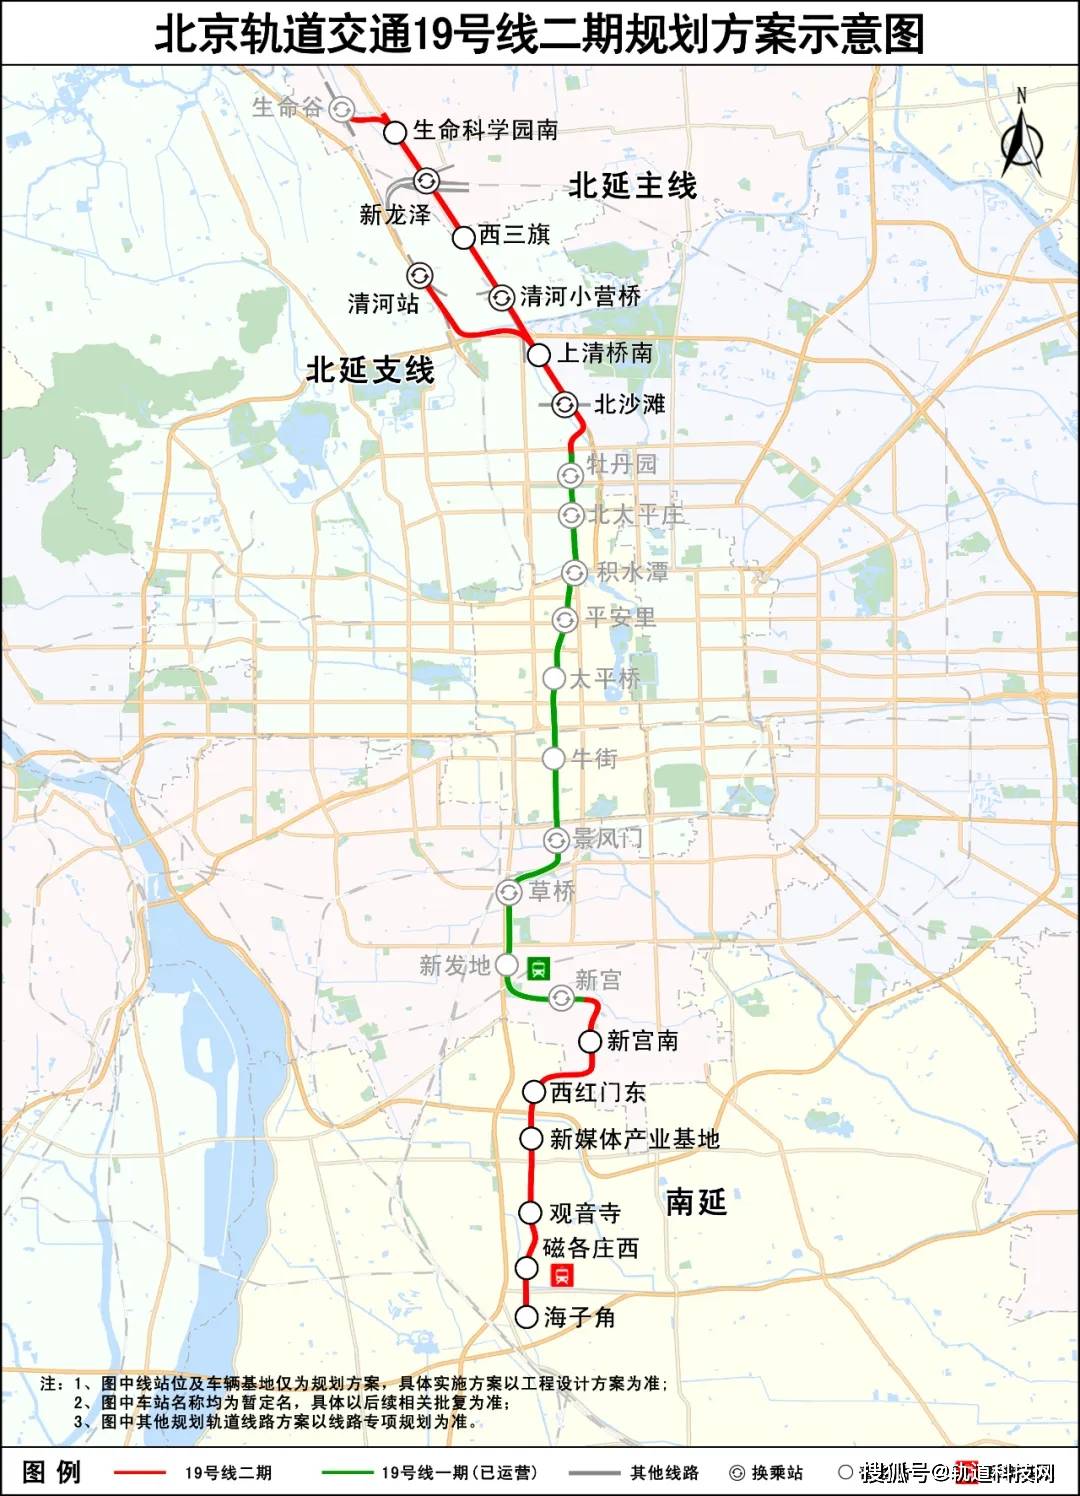 两条线路规划方案曝光!北京地铁三期规划有新进展→